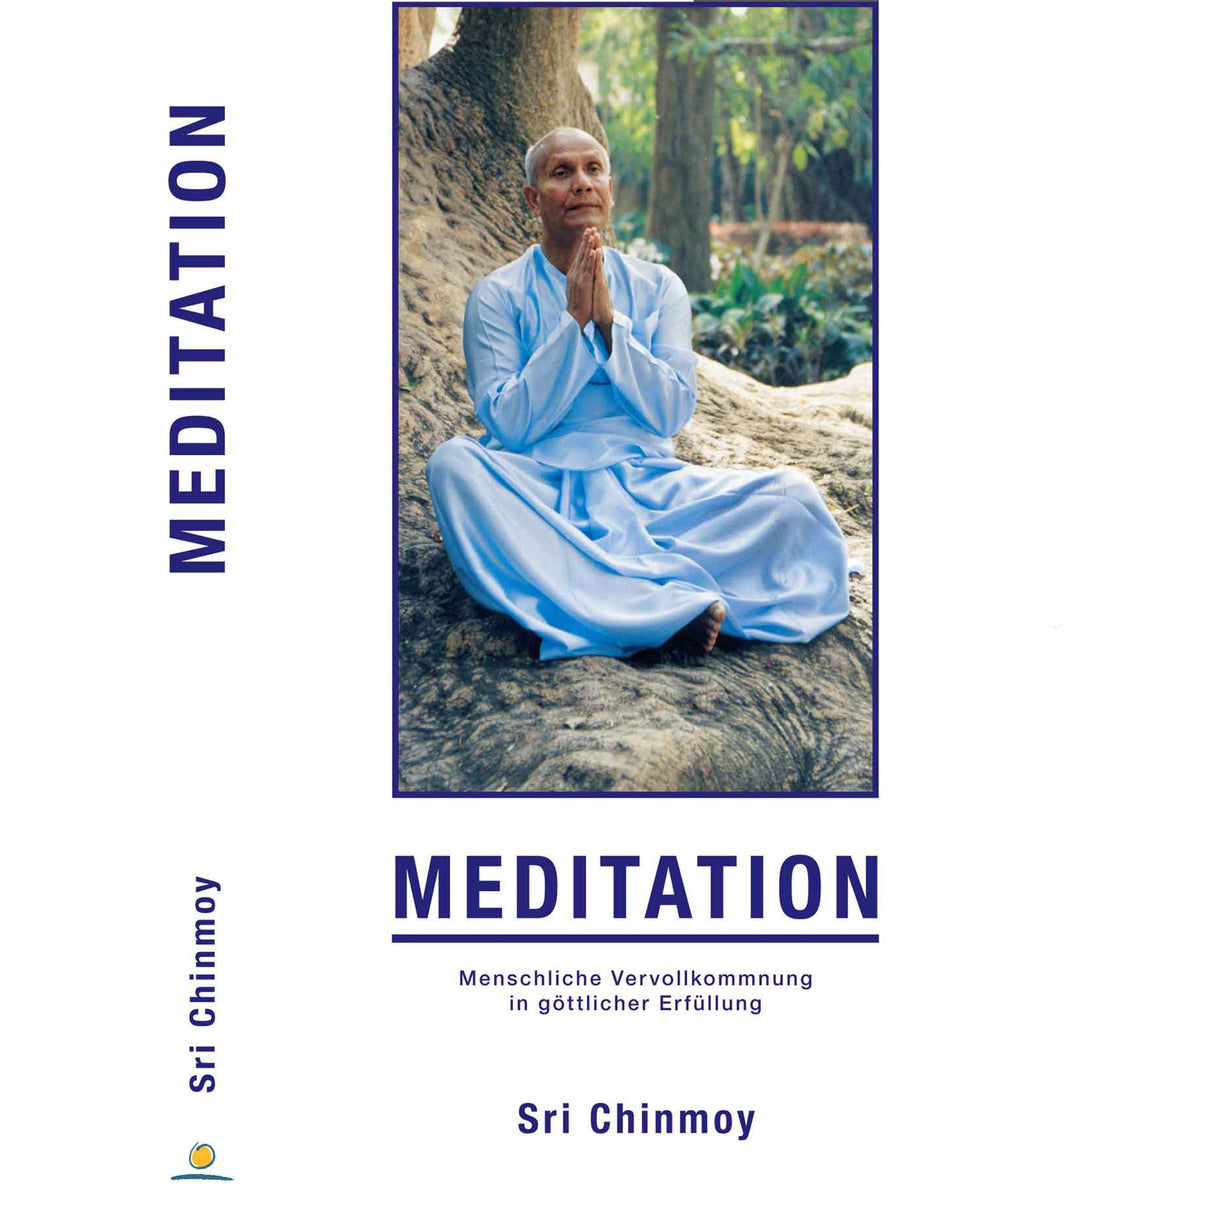 Buch Meditation - Sri Chinmoy